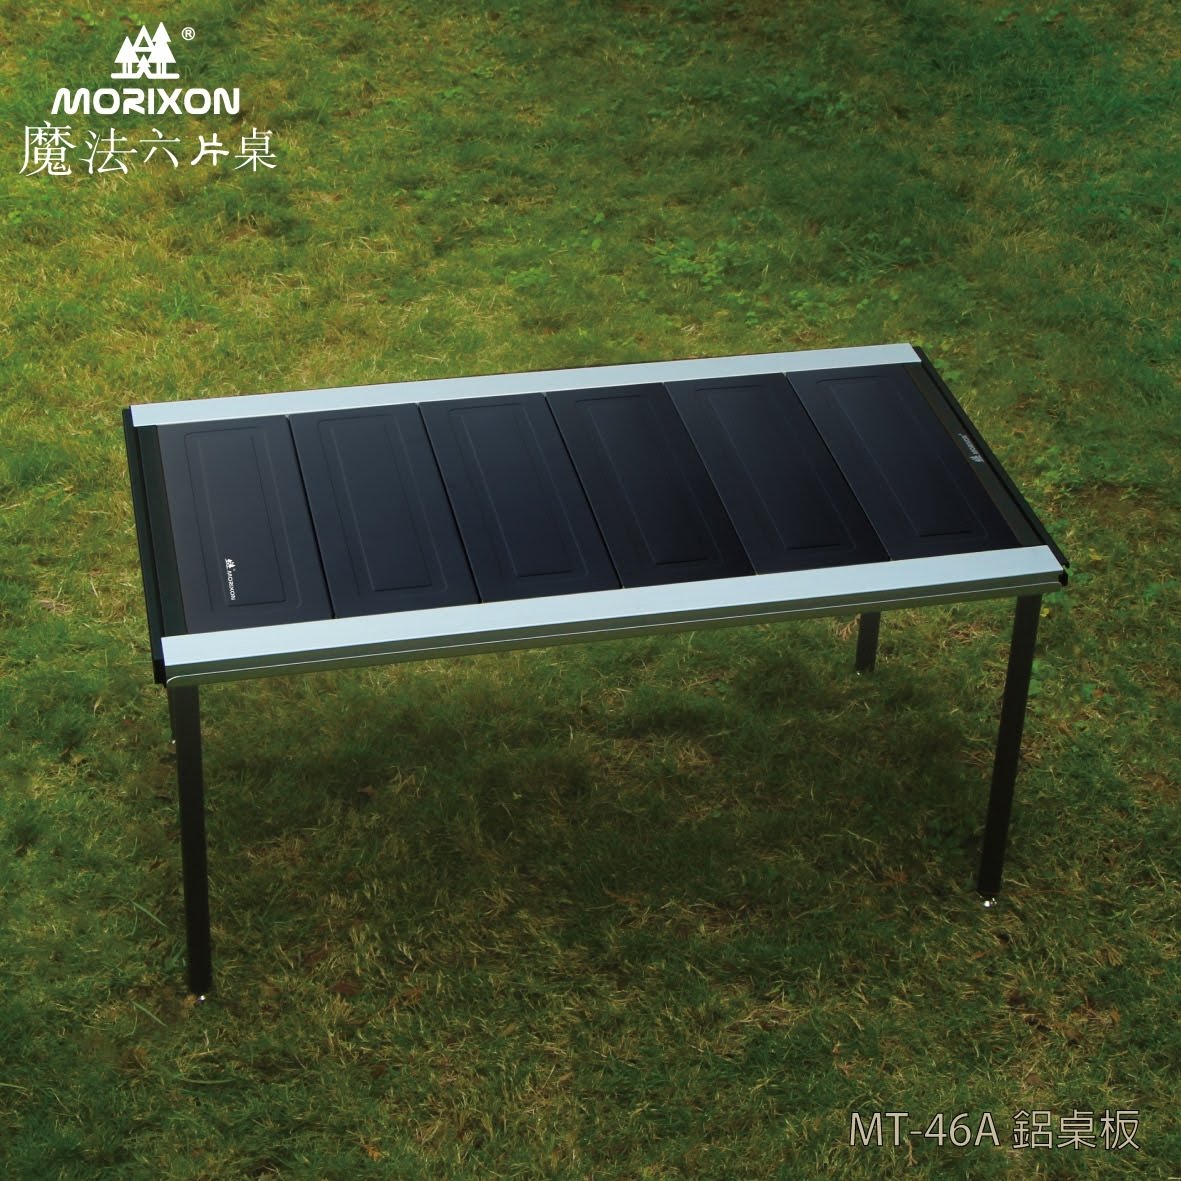 【露營好夥伴】Morixon-魔法六片桌 MT-46A 鋁合金桌板 露營桌 拼接桌 野餐桌 摺疊桌 超薄桌框 超具質感